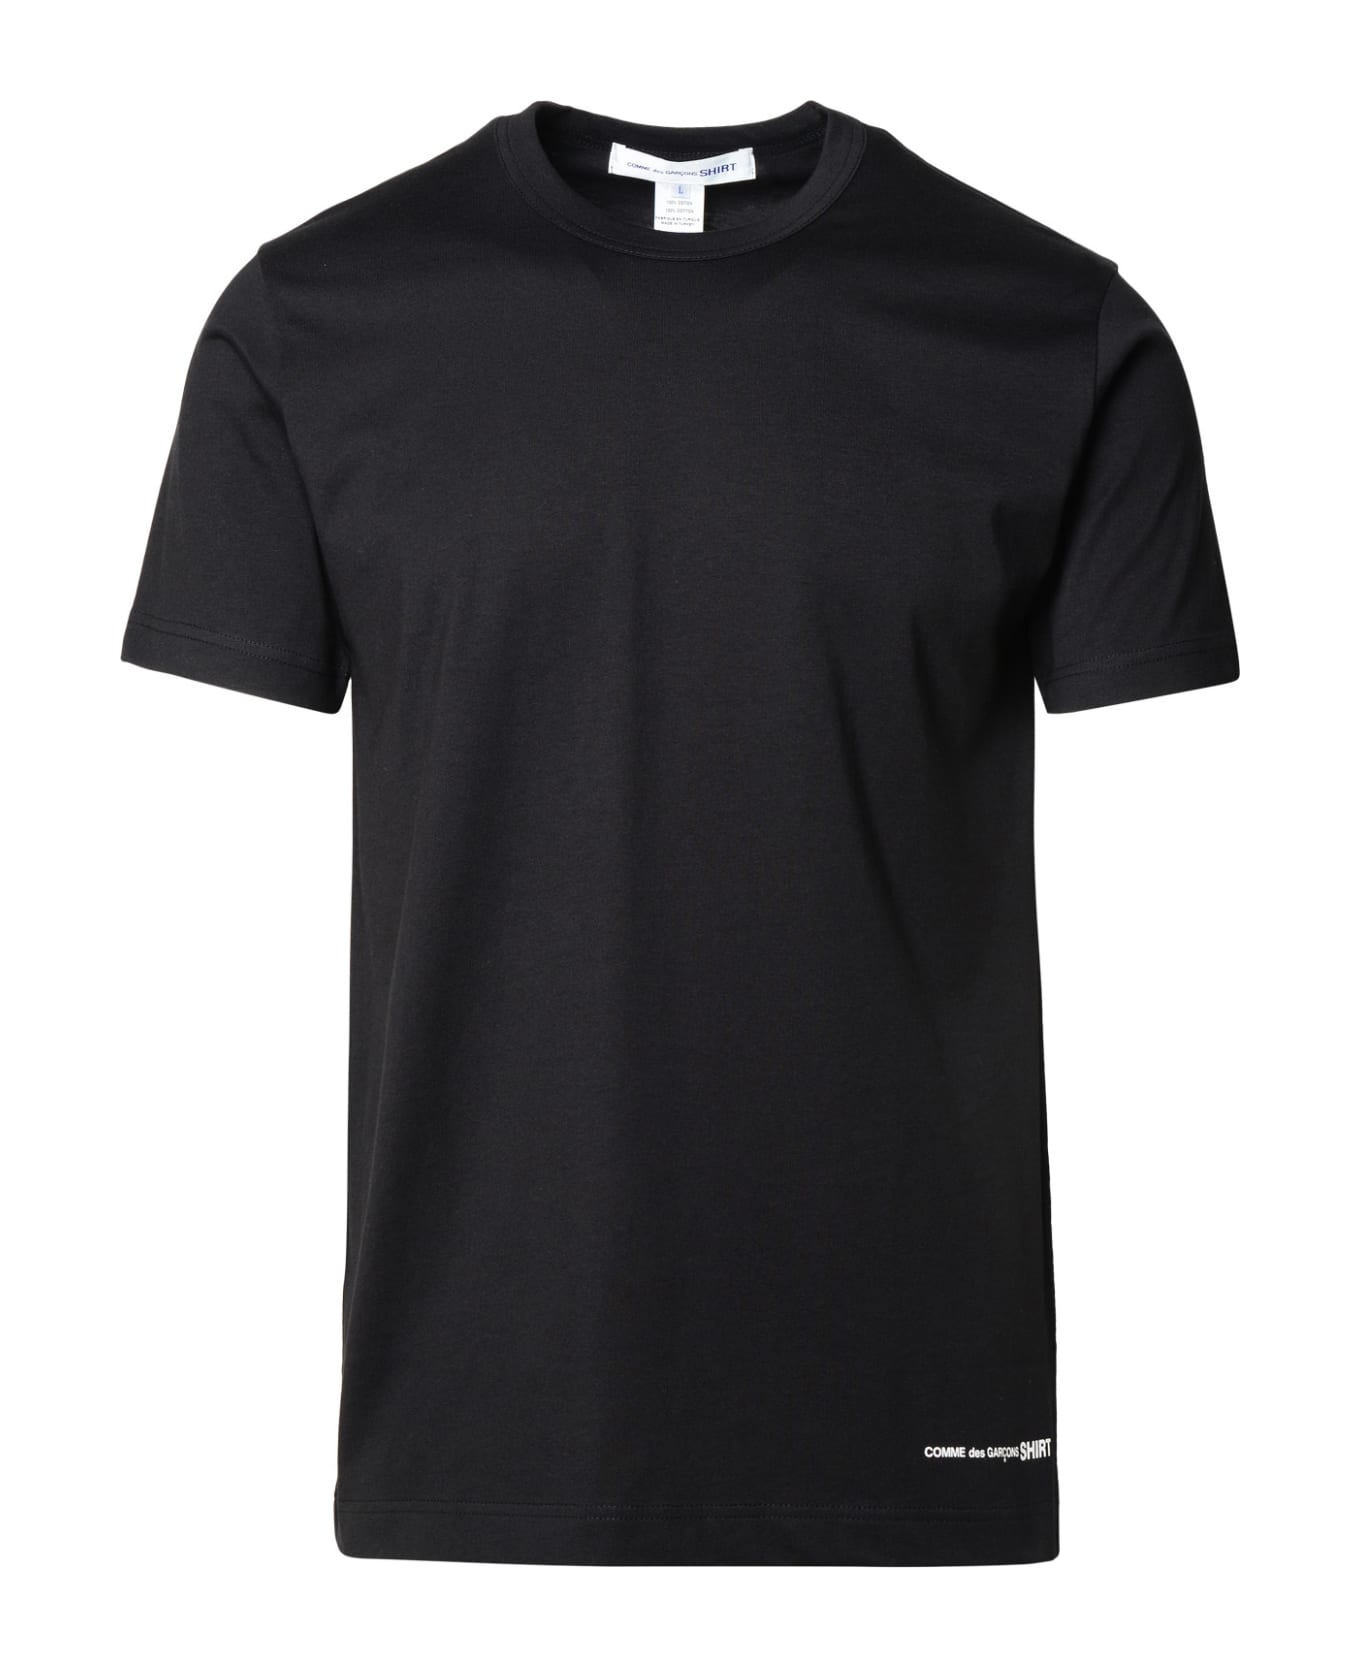 Comme des Garçons Shirt Black Cotton T-shirt - Black